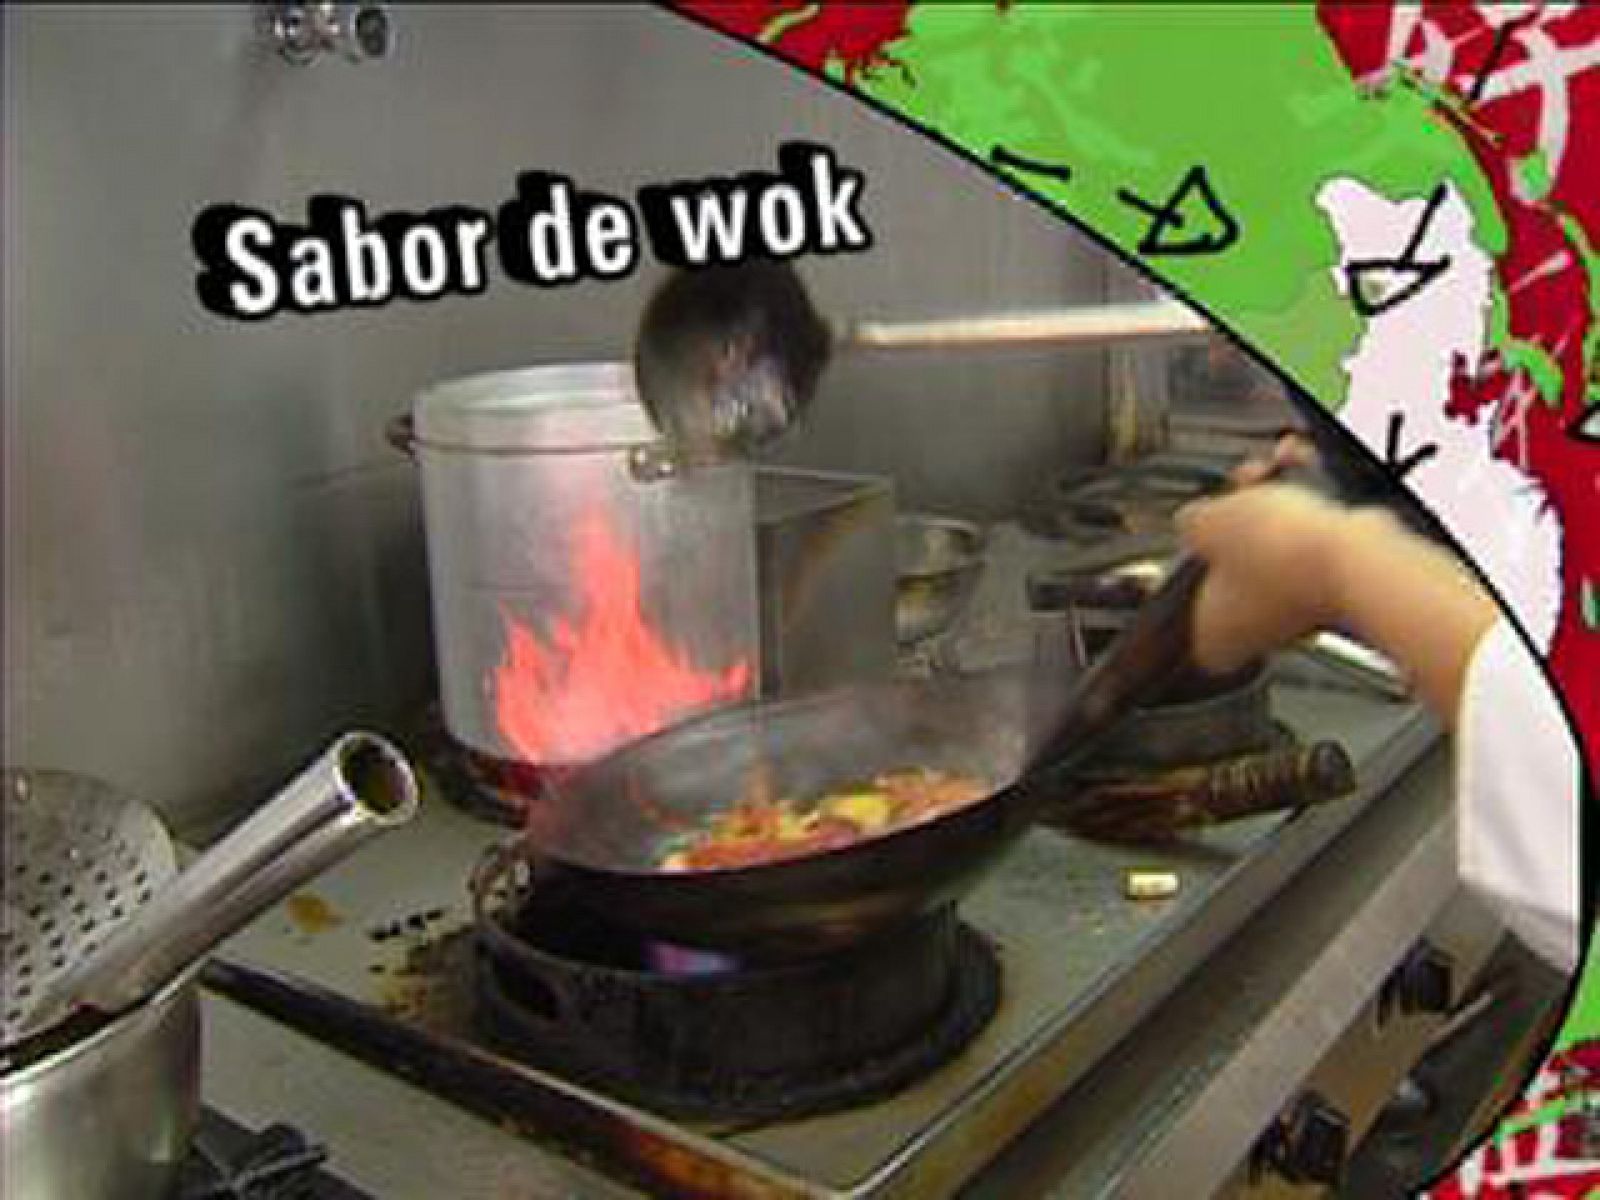 Les cuines dels nous catalans - Xina, sabor de wok